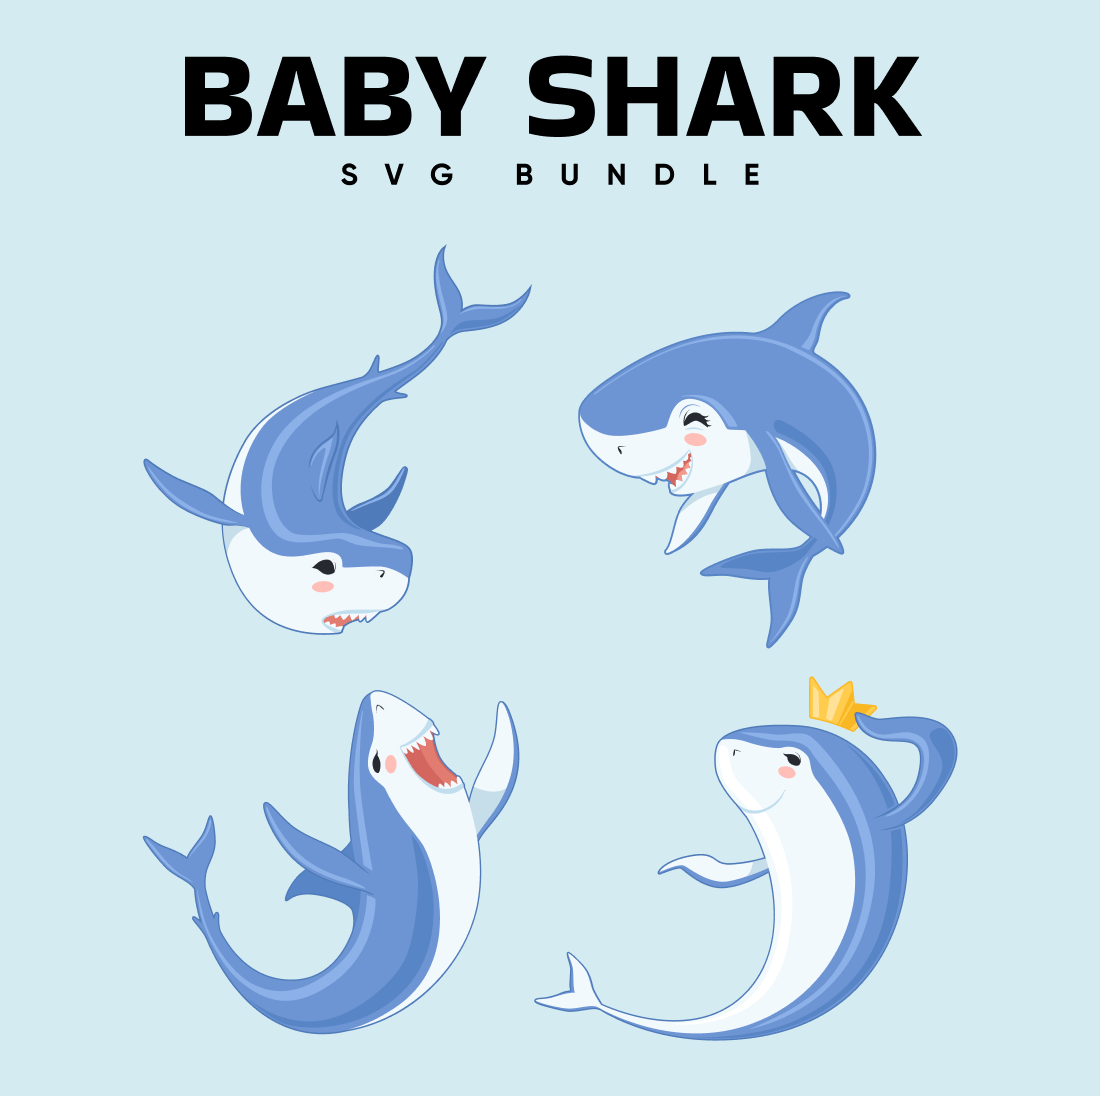 Baby Shark SVG Bundle on the blue background.